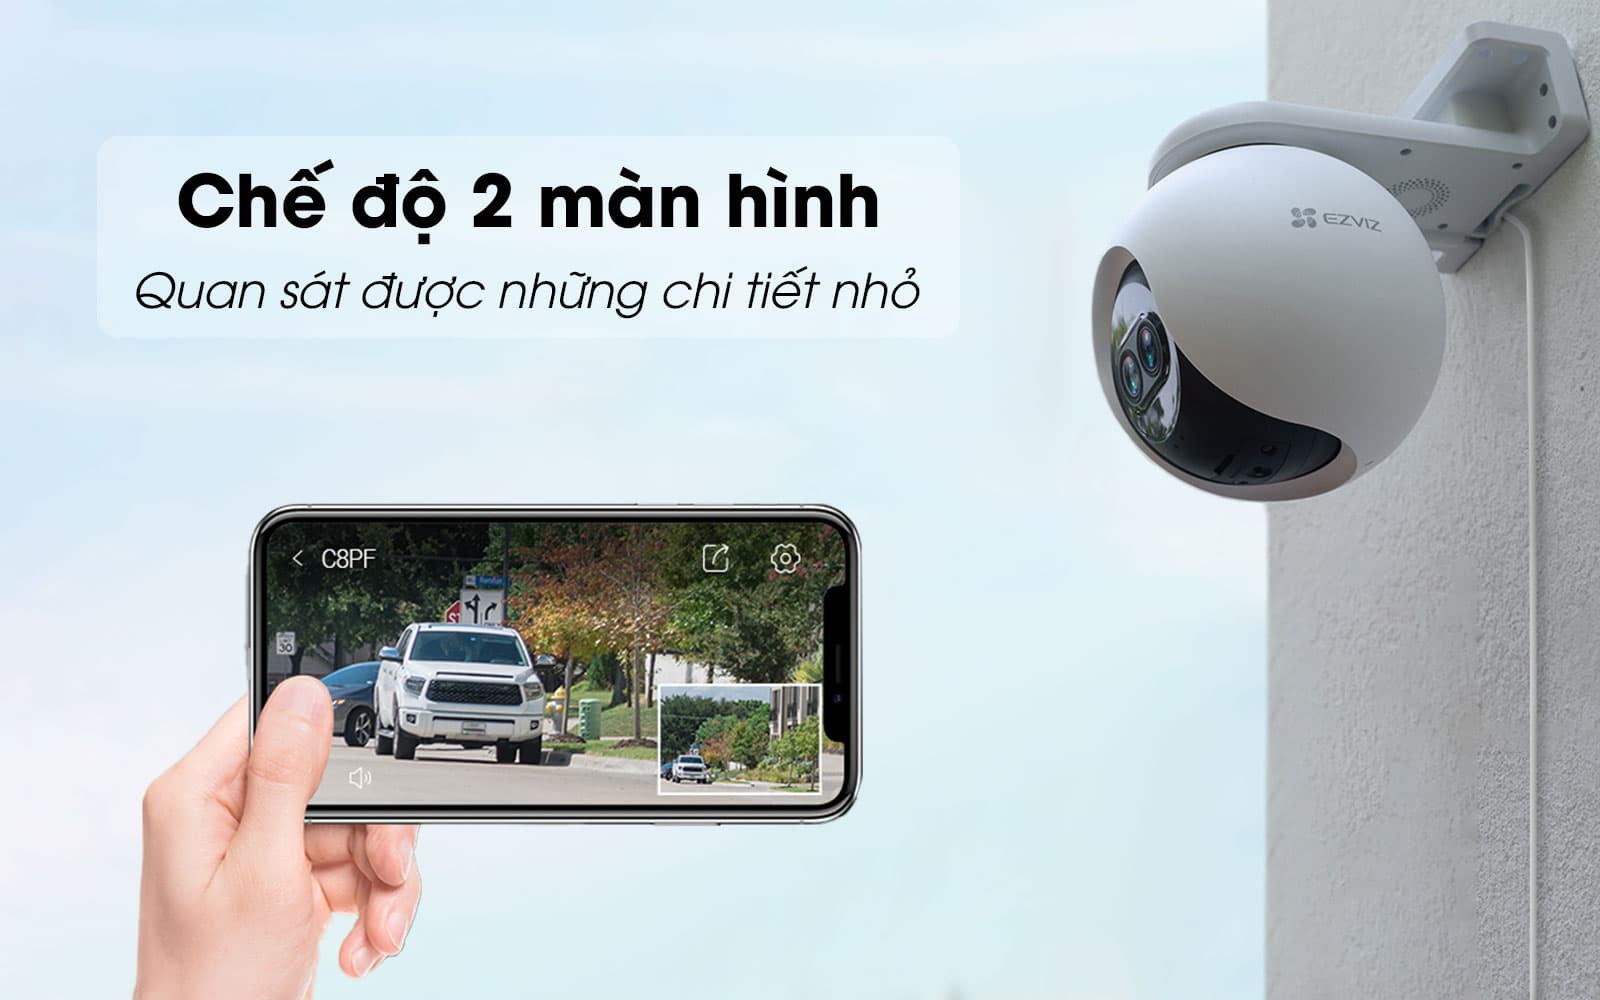 Camera Ezviz C8PF 2MP Mắt Kép - AI Thông minh - Xoay 360 độ - Đàm thoại 2 chiều - Hàng chính hãng